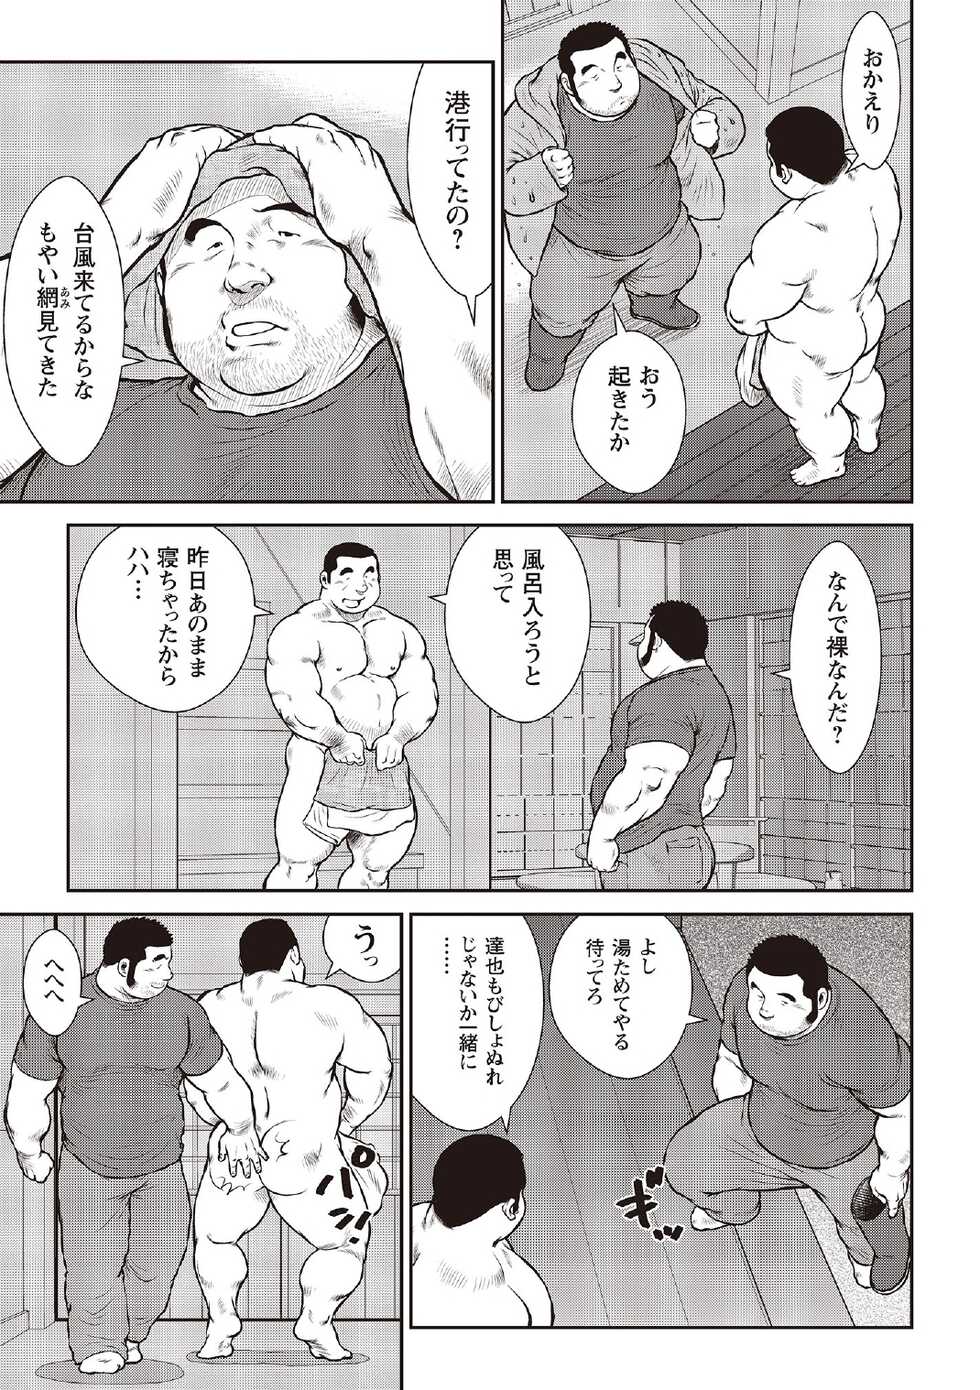 [Ebisubashi Seizou] Ebisubashi Seizou Tanpen Manga Shuu 2 Fuuun! Danshi Ryou [Bunsatsuban] PART 3 Bousou Hantou Taifuu Zensen Ch. 3 ~ Ch. 5 [Digital] - Page 29